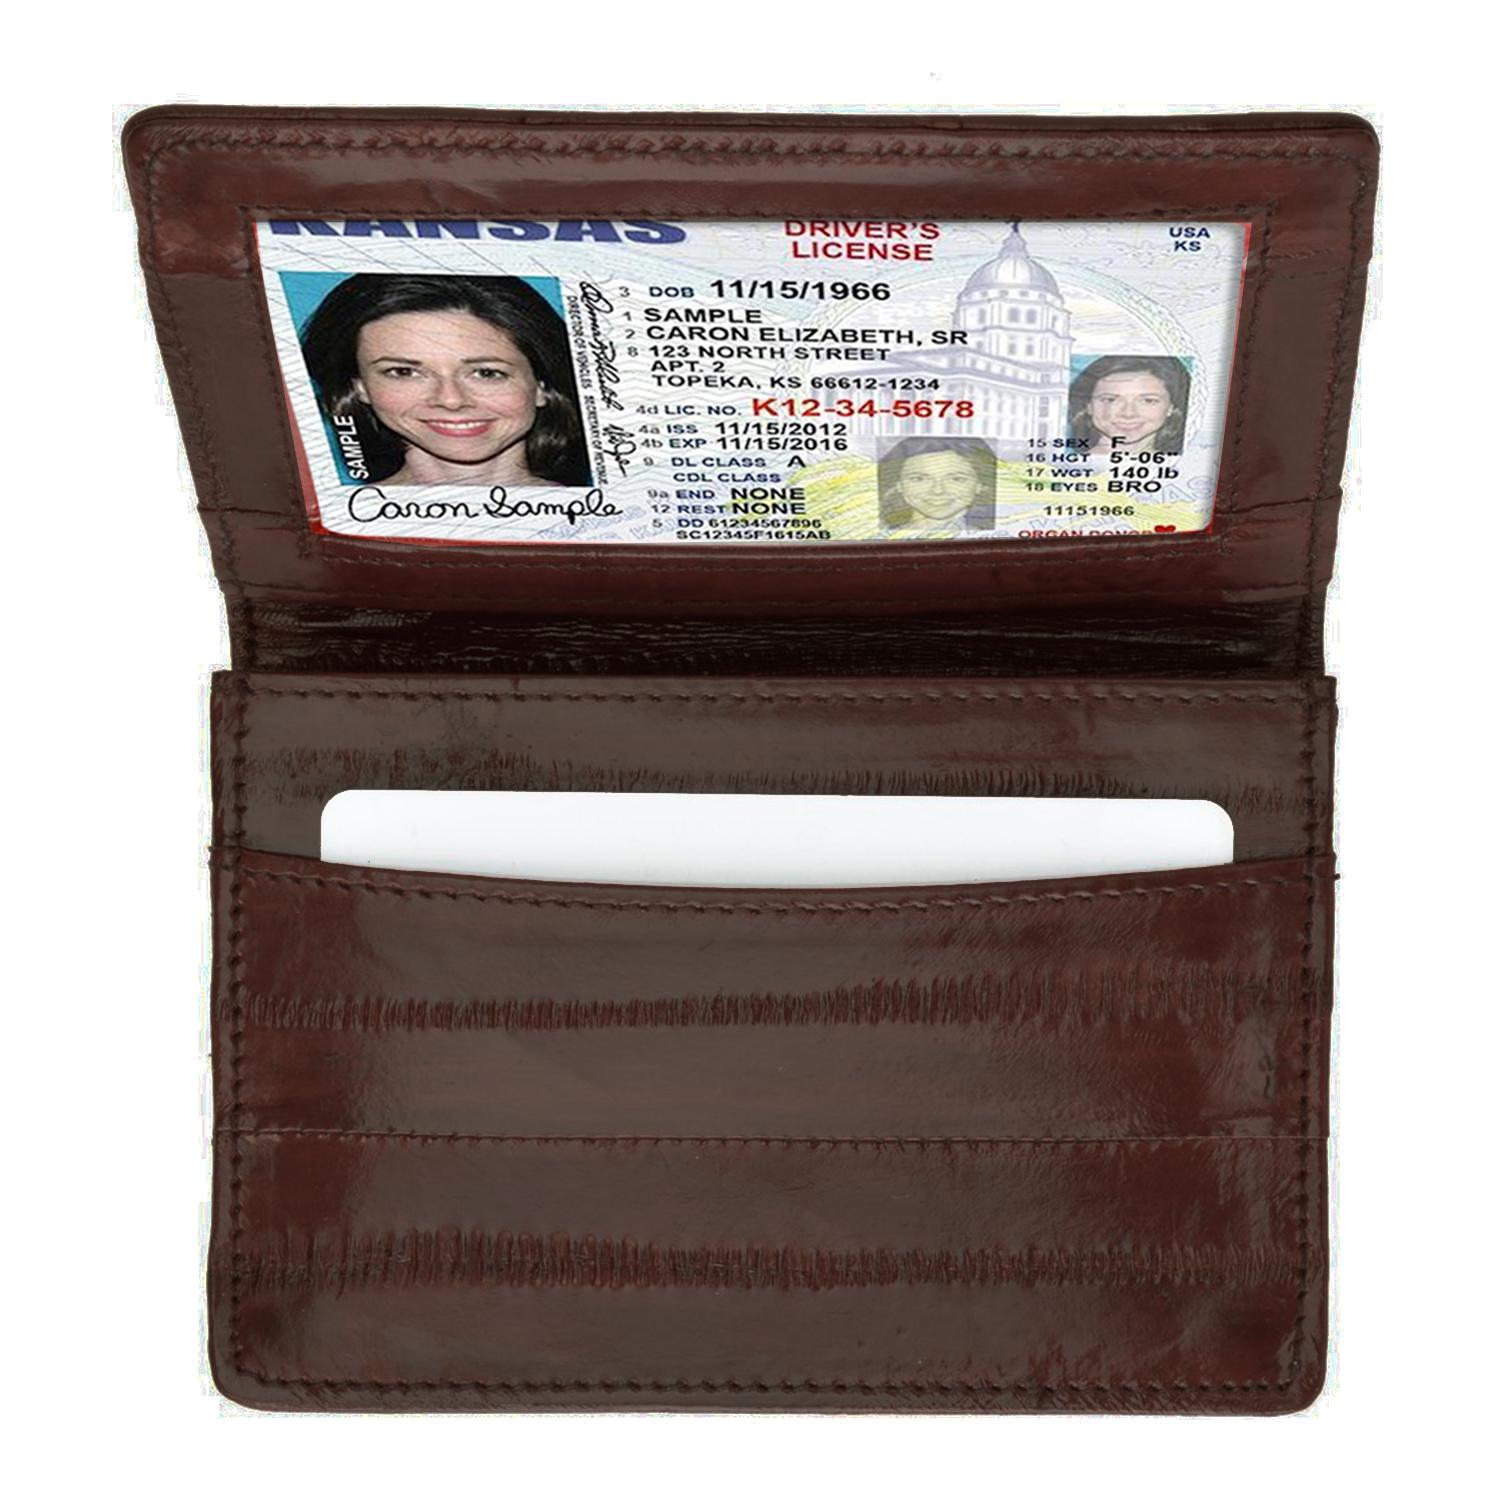 Wallet - Genuine Eel Skin Business Card Holder